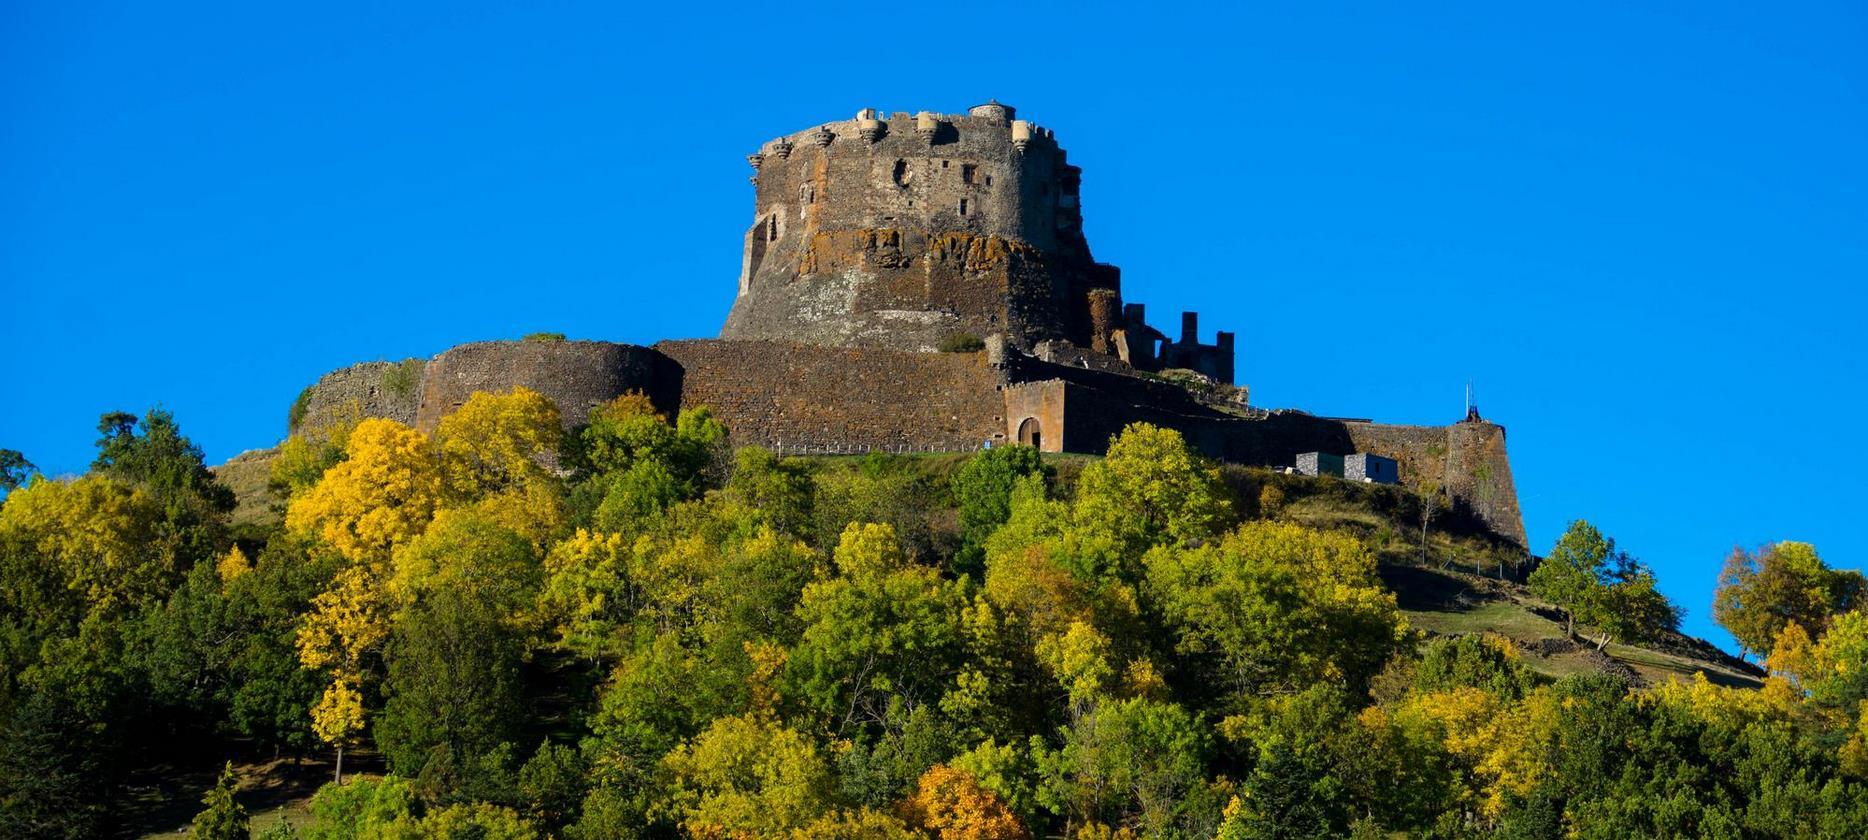 Le chateau de Murol vue du Village de Murol dans le Puy de Dôme